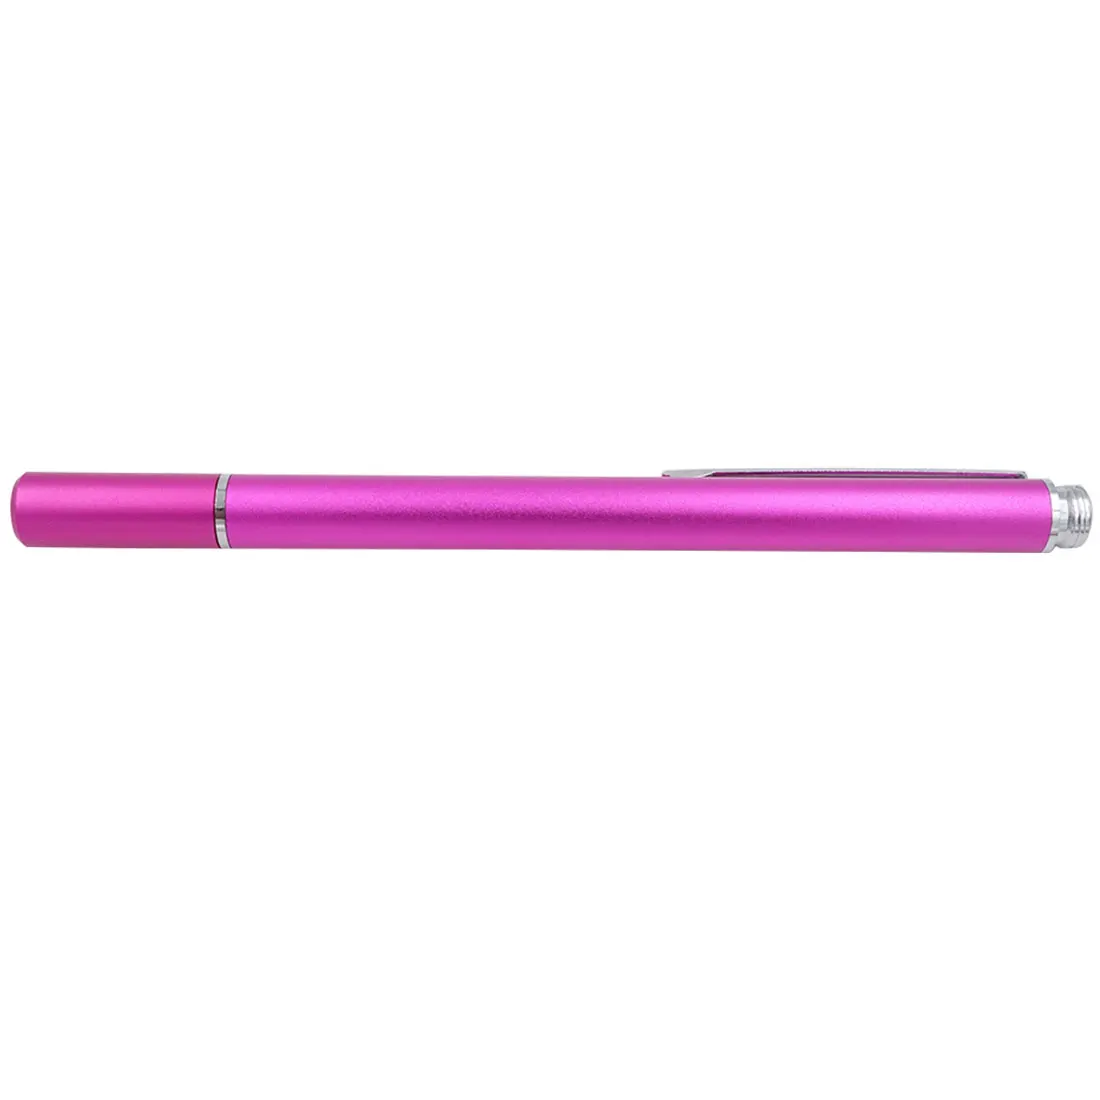 Ручка для сенсорного экрана, высокоточная ручка на присоске, высокочувствительная емкостная ручка, Профессиональный Прозрачный дисковый стилус